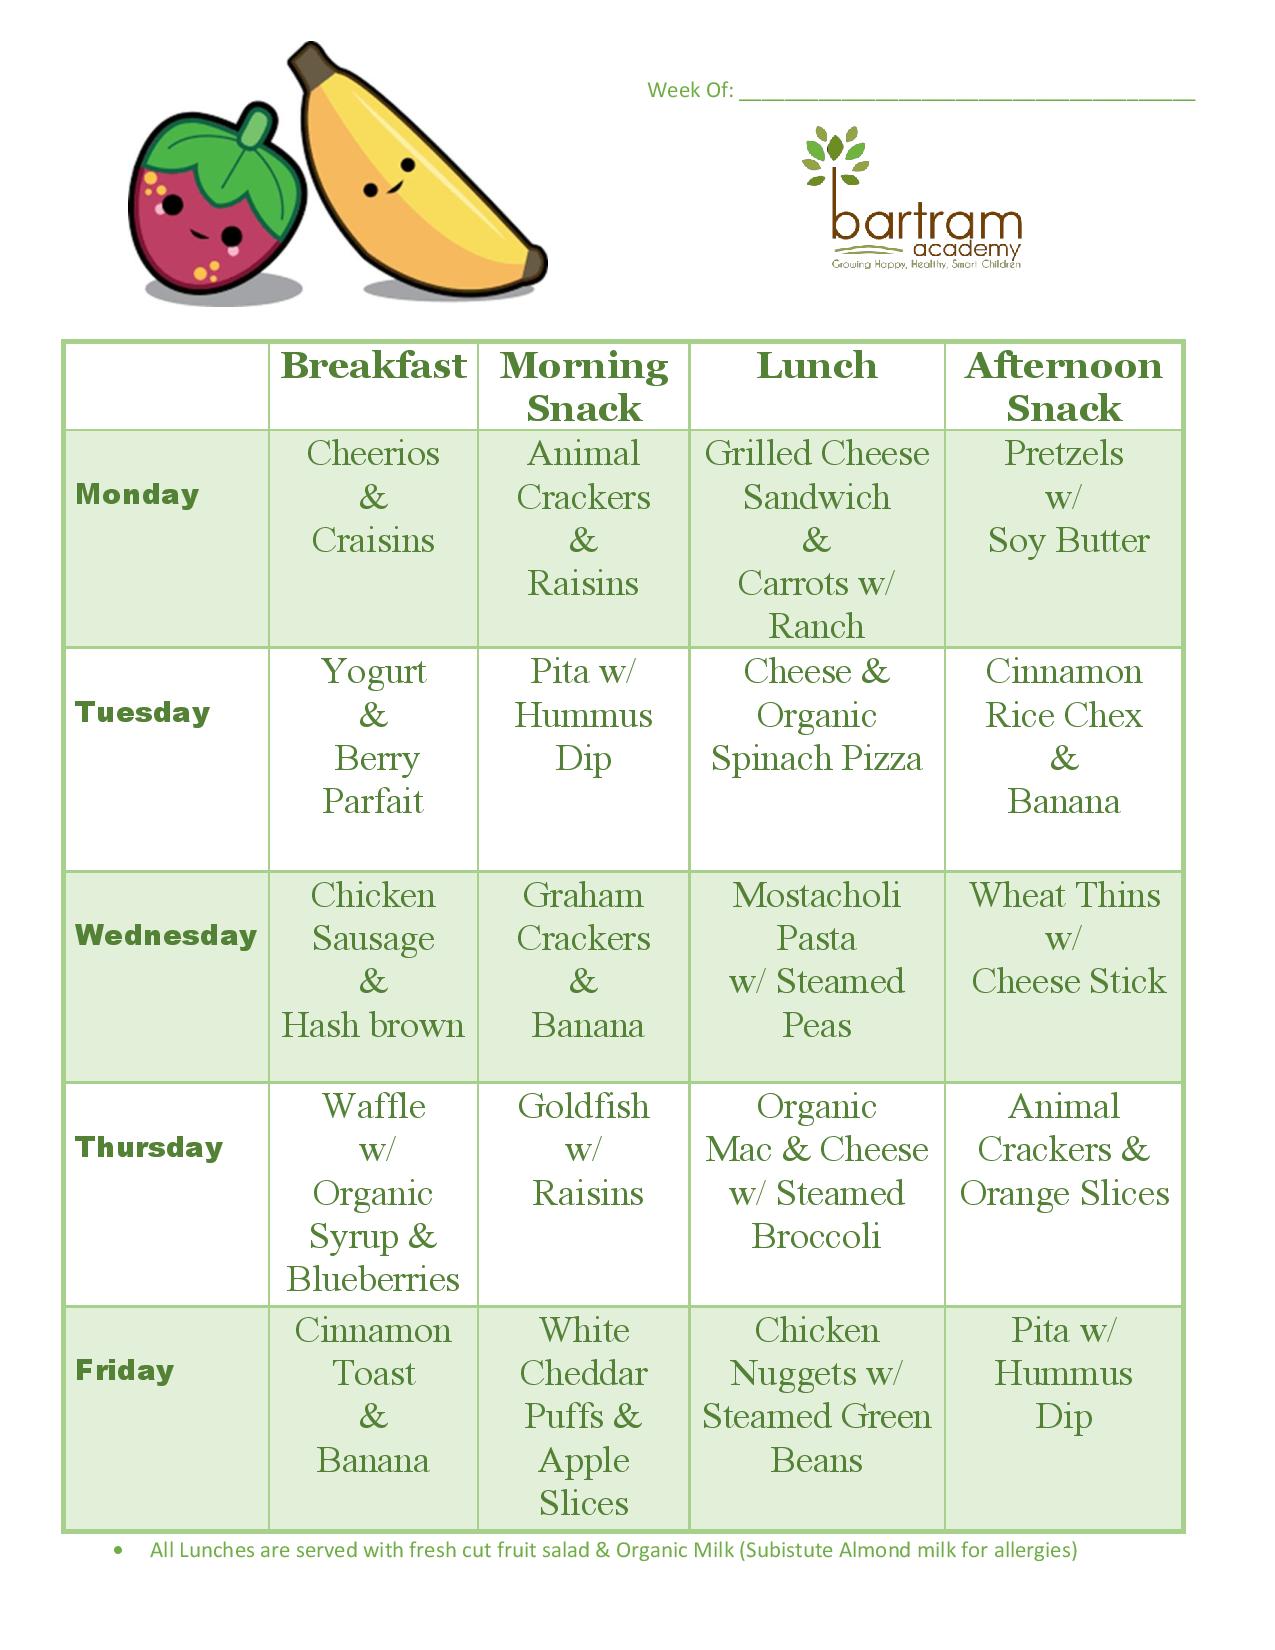 Week 1 menu at Bartram Academy